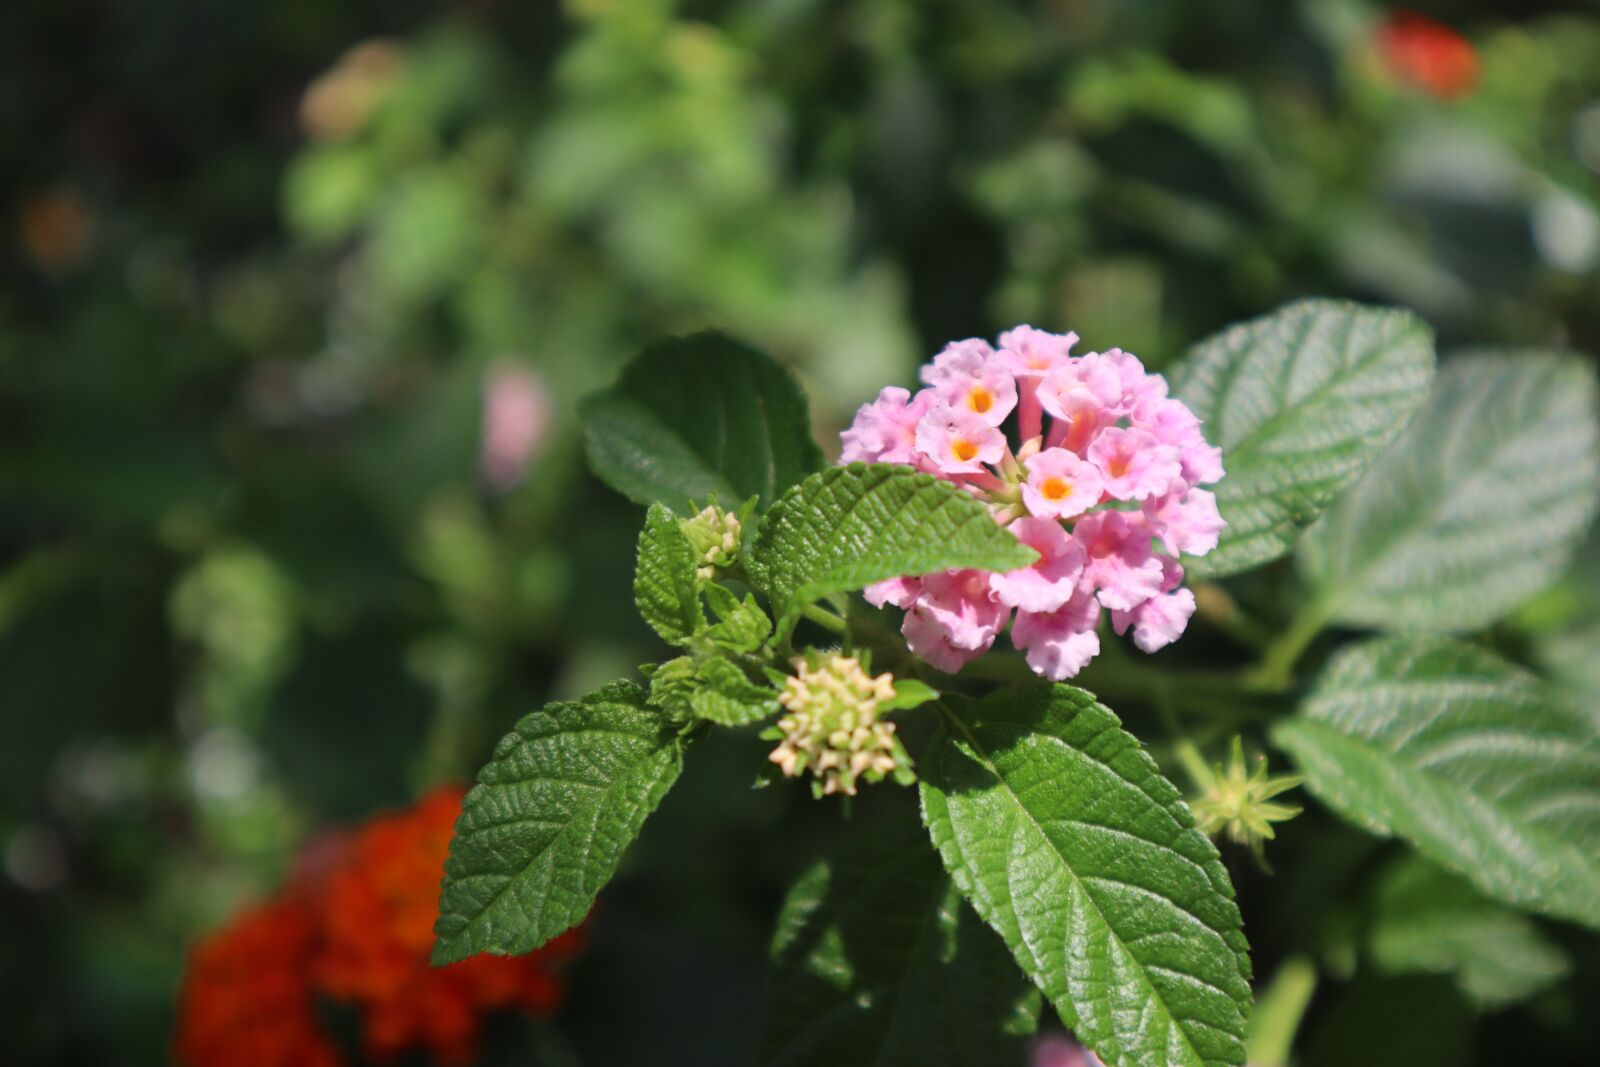 Canon EOS M50 (EOS Kiss M) sample photo. Pink, flora, garden photography